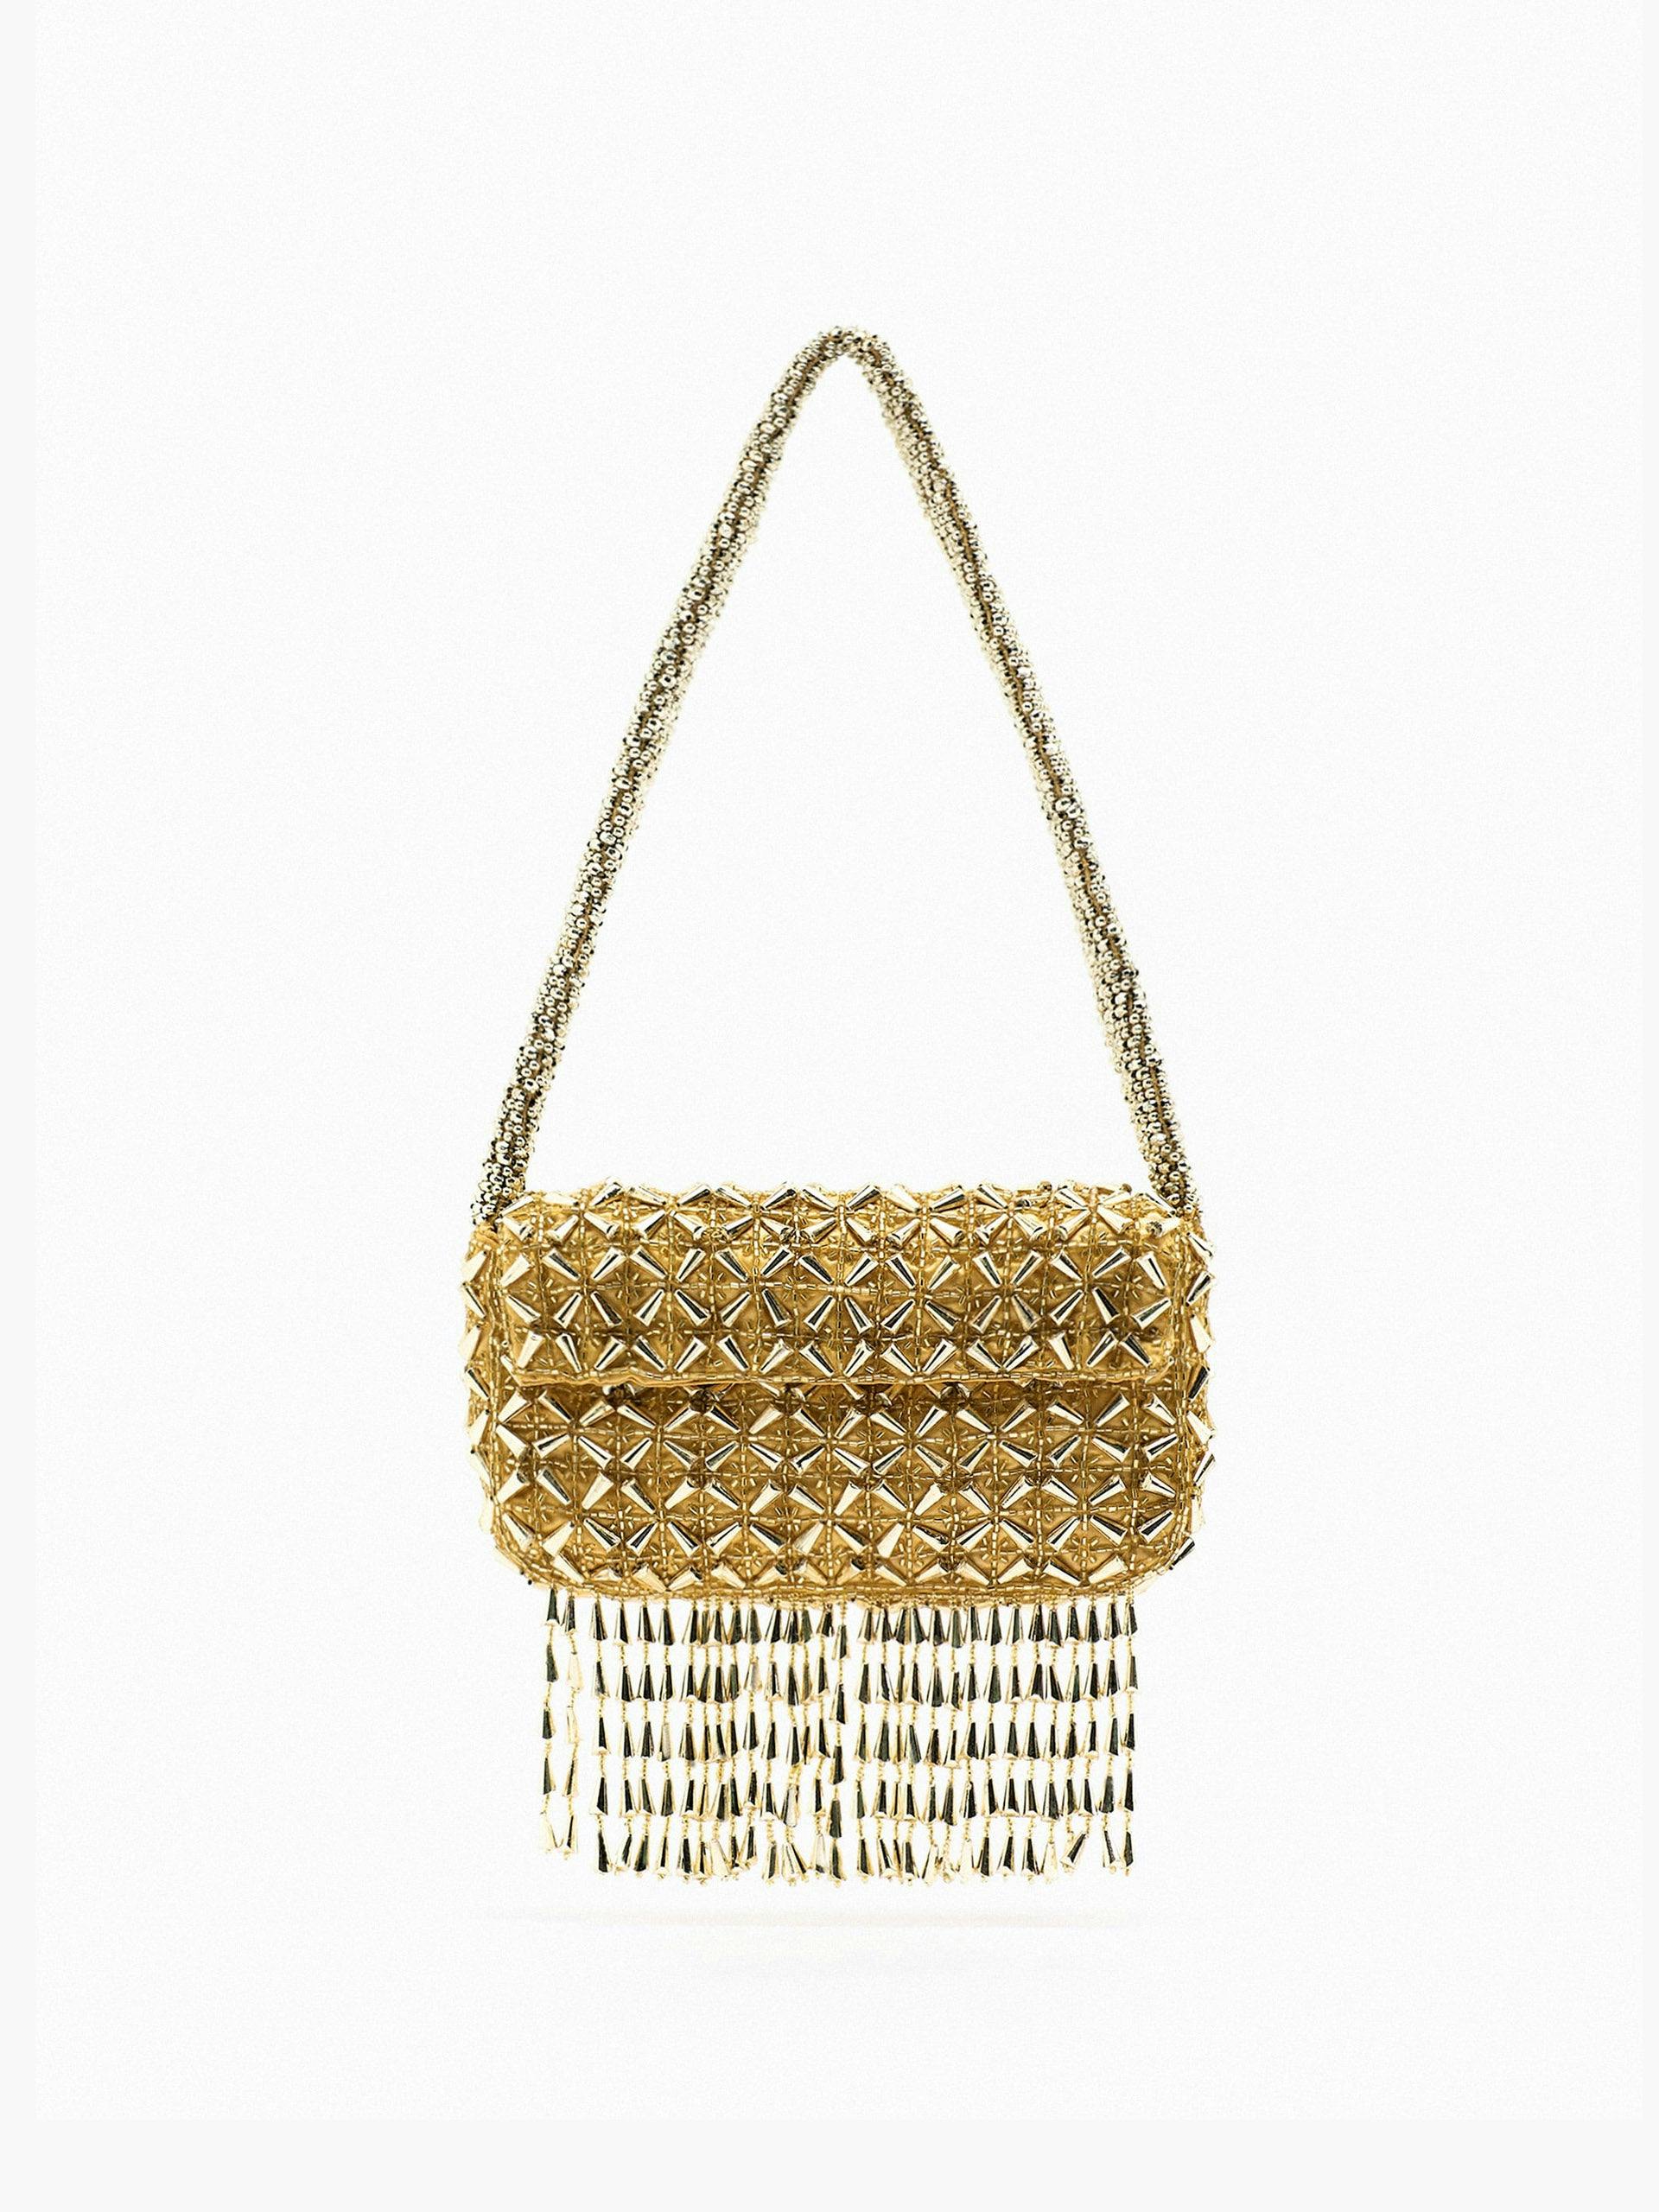 Gold beaded shoulder bag with fringing